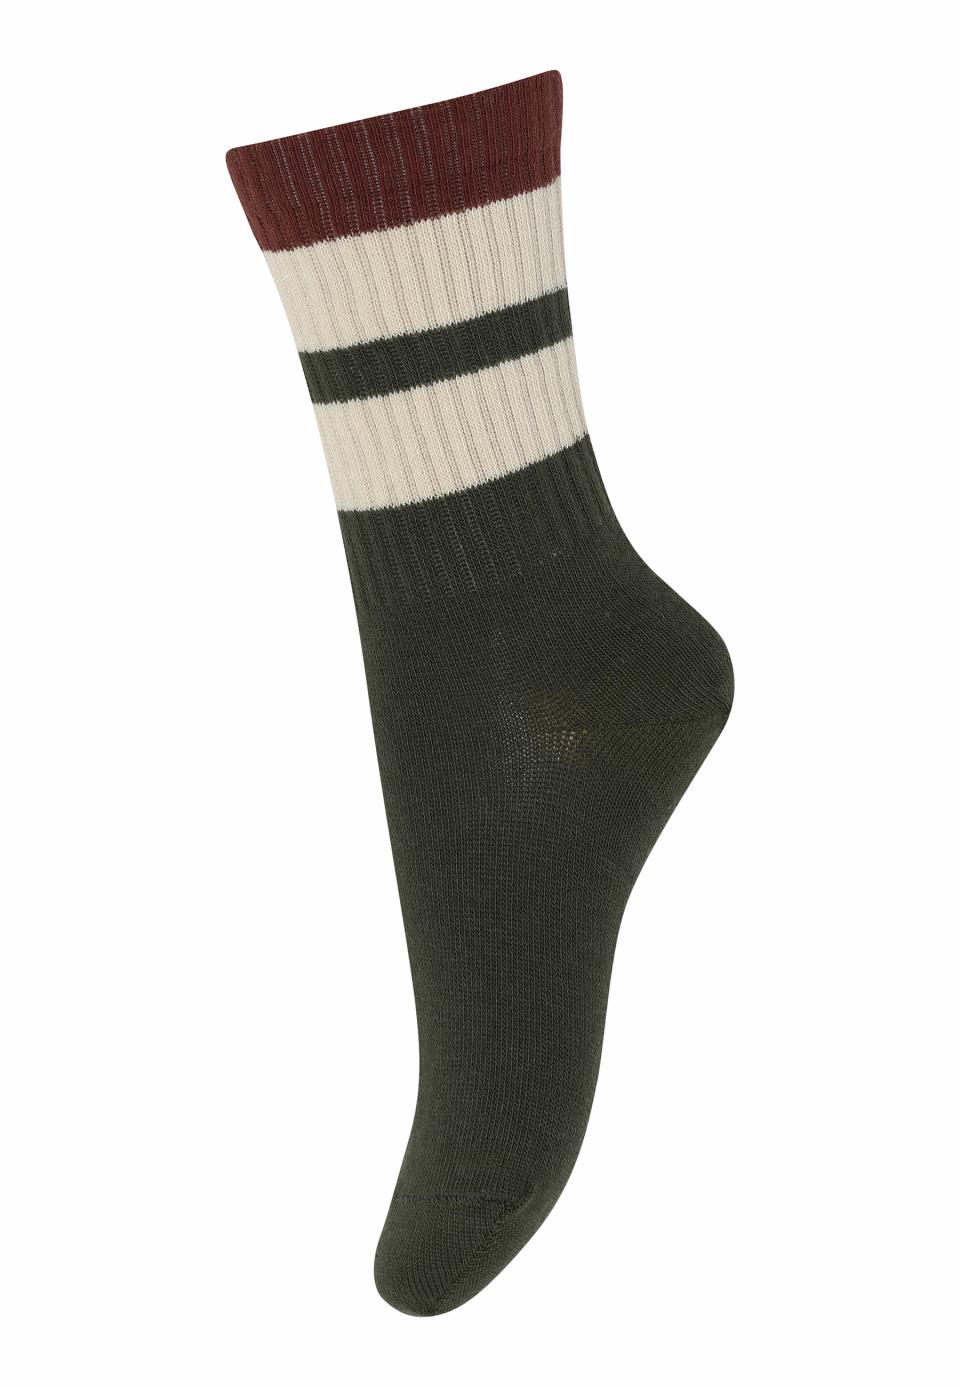 Socken FREJ in verschiedenen Farben